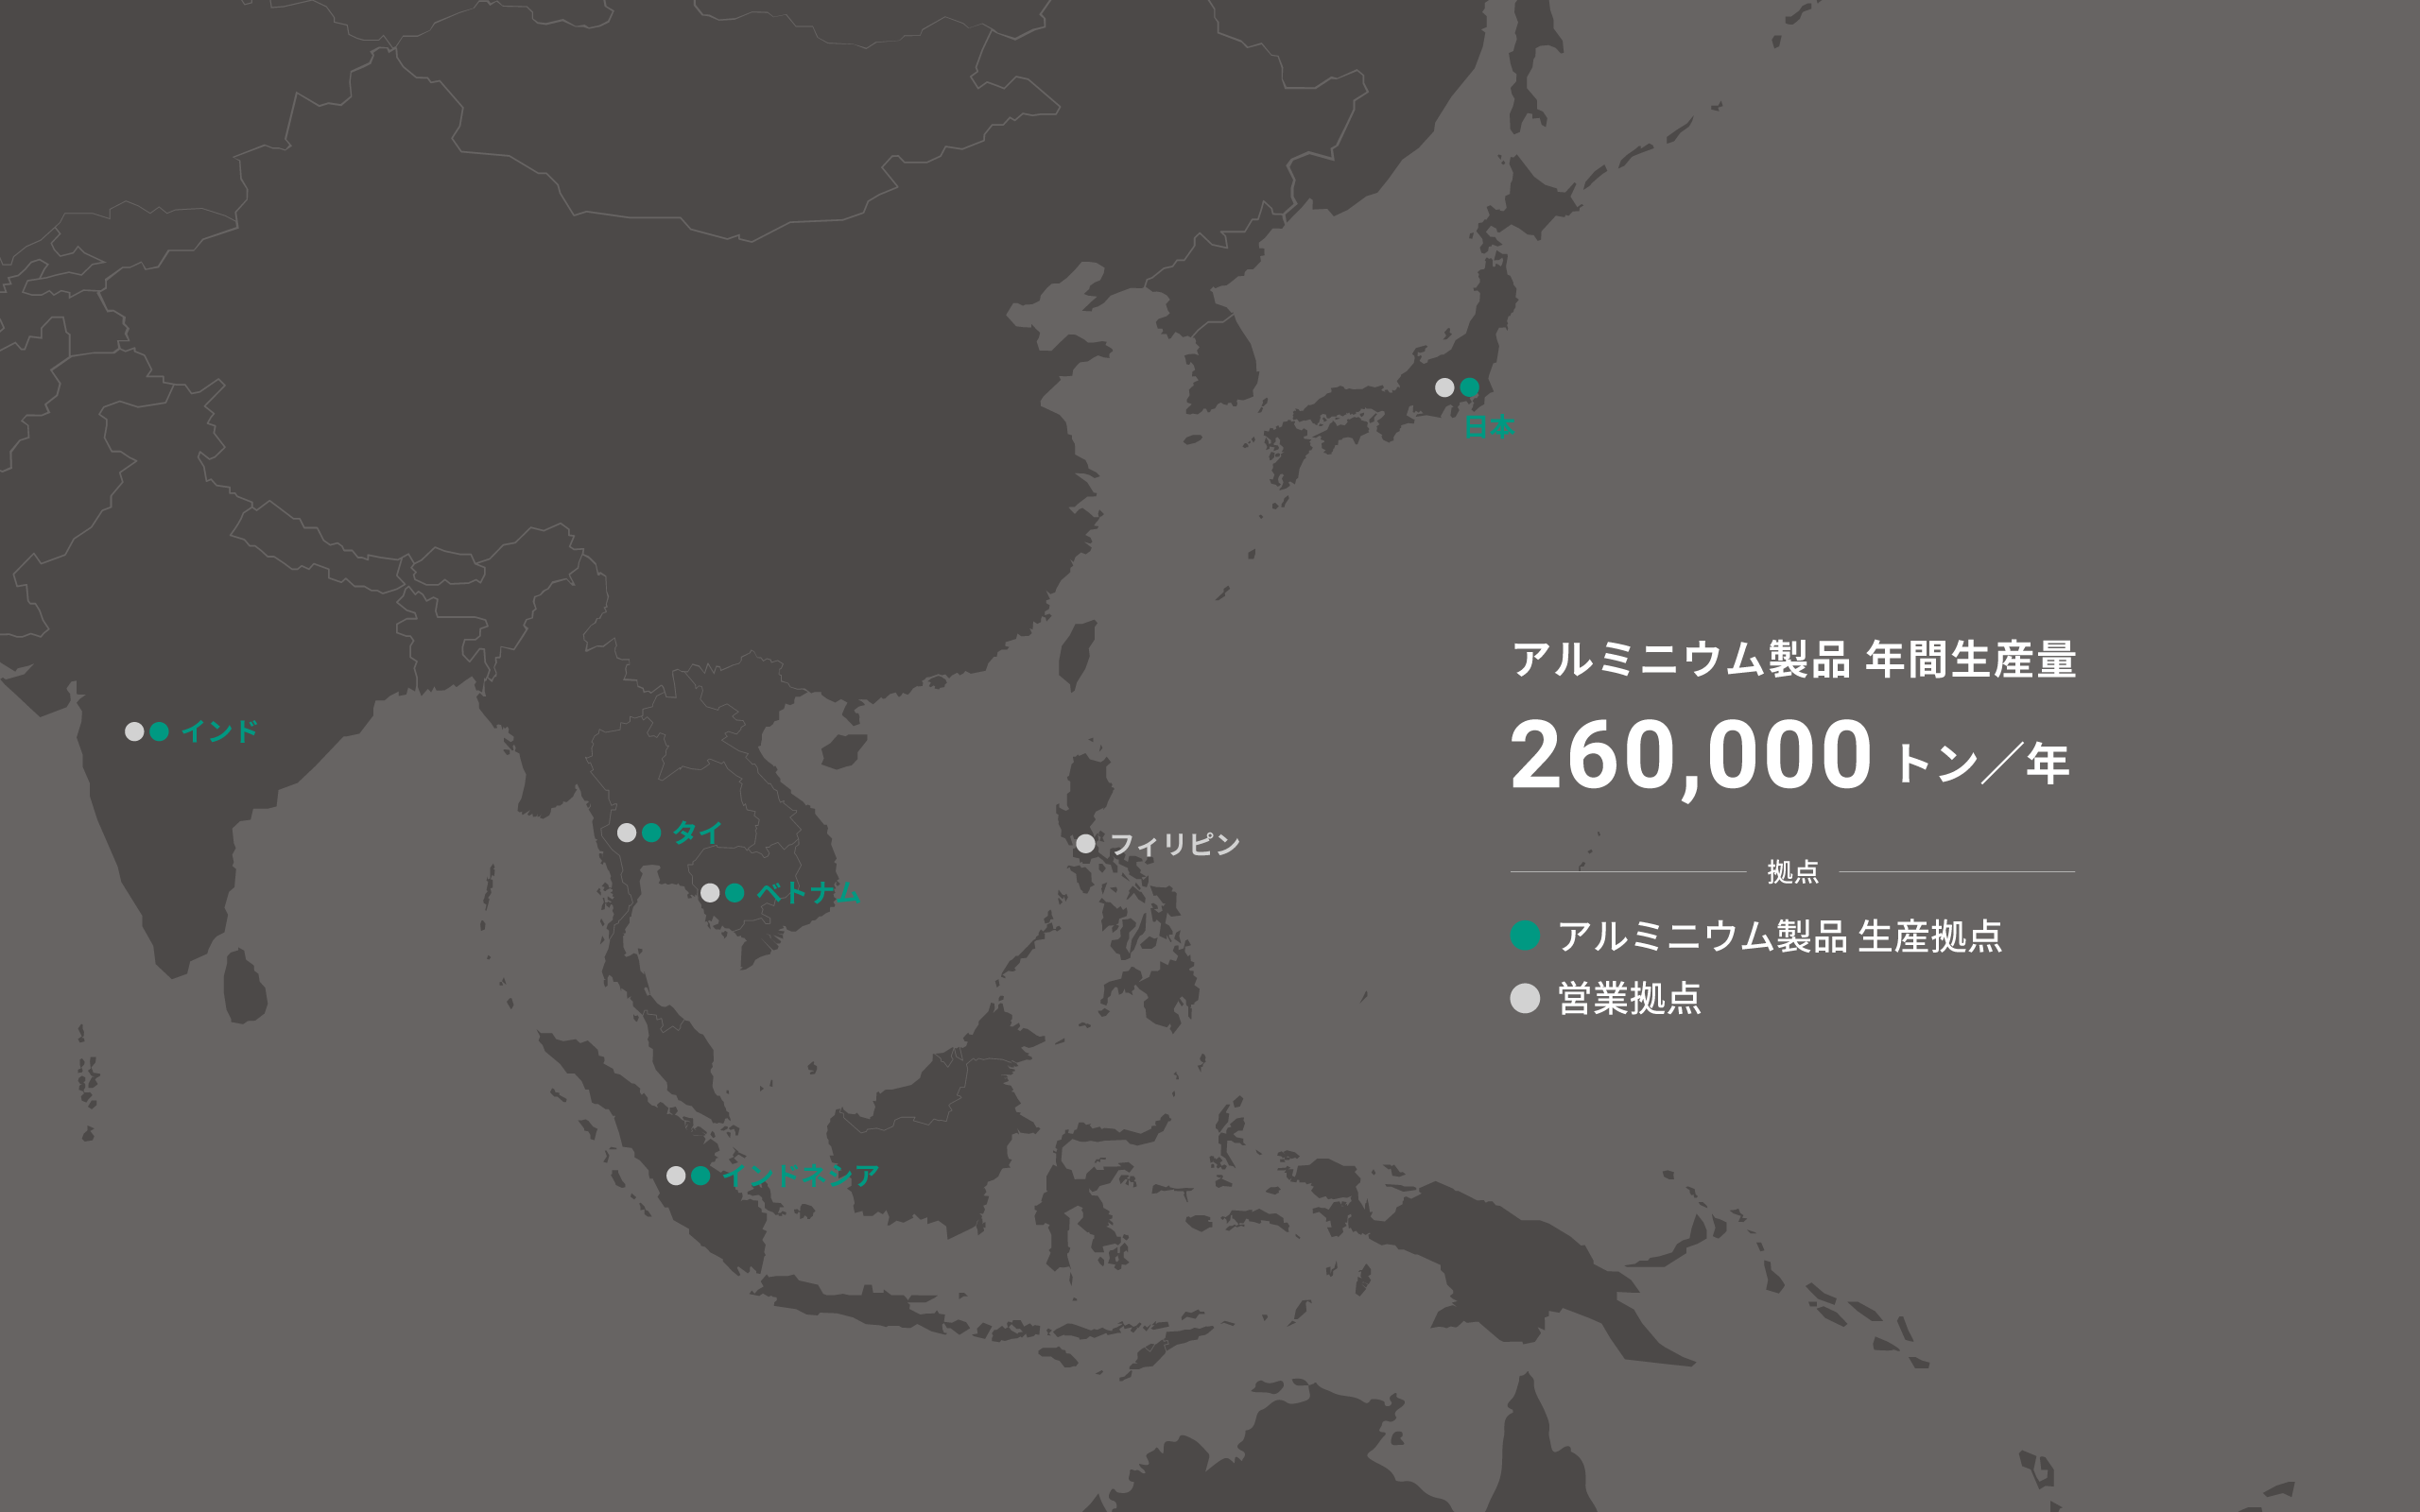 アルミニウム製品生産拠点、営業拠点を示す地図。アルミニウム製品年間生産量 260,000トン/年